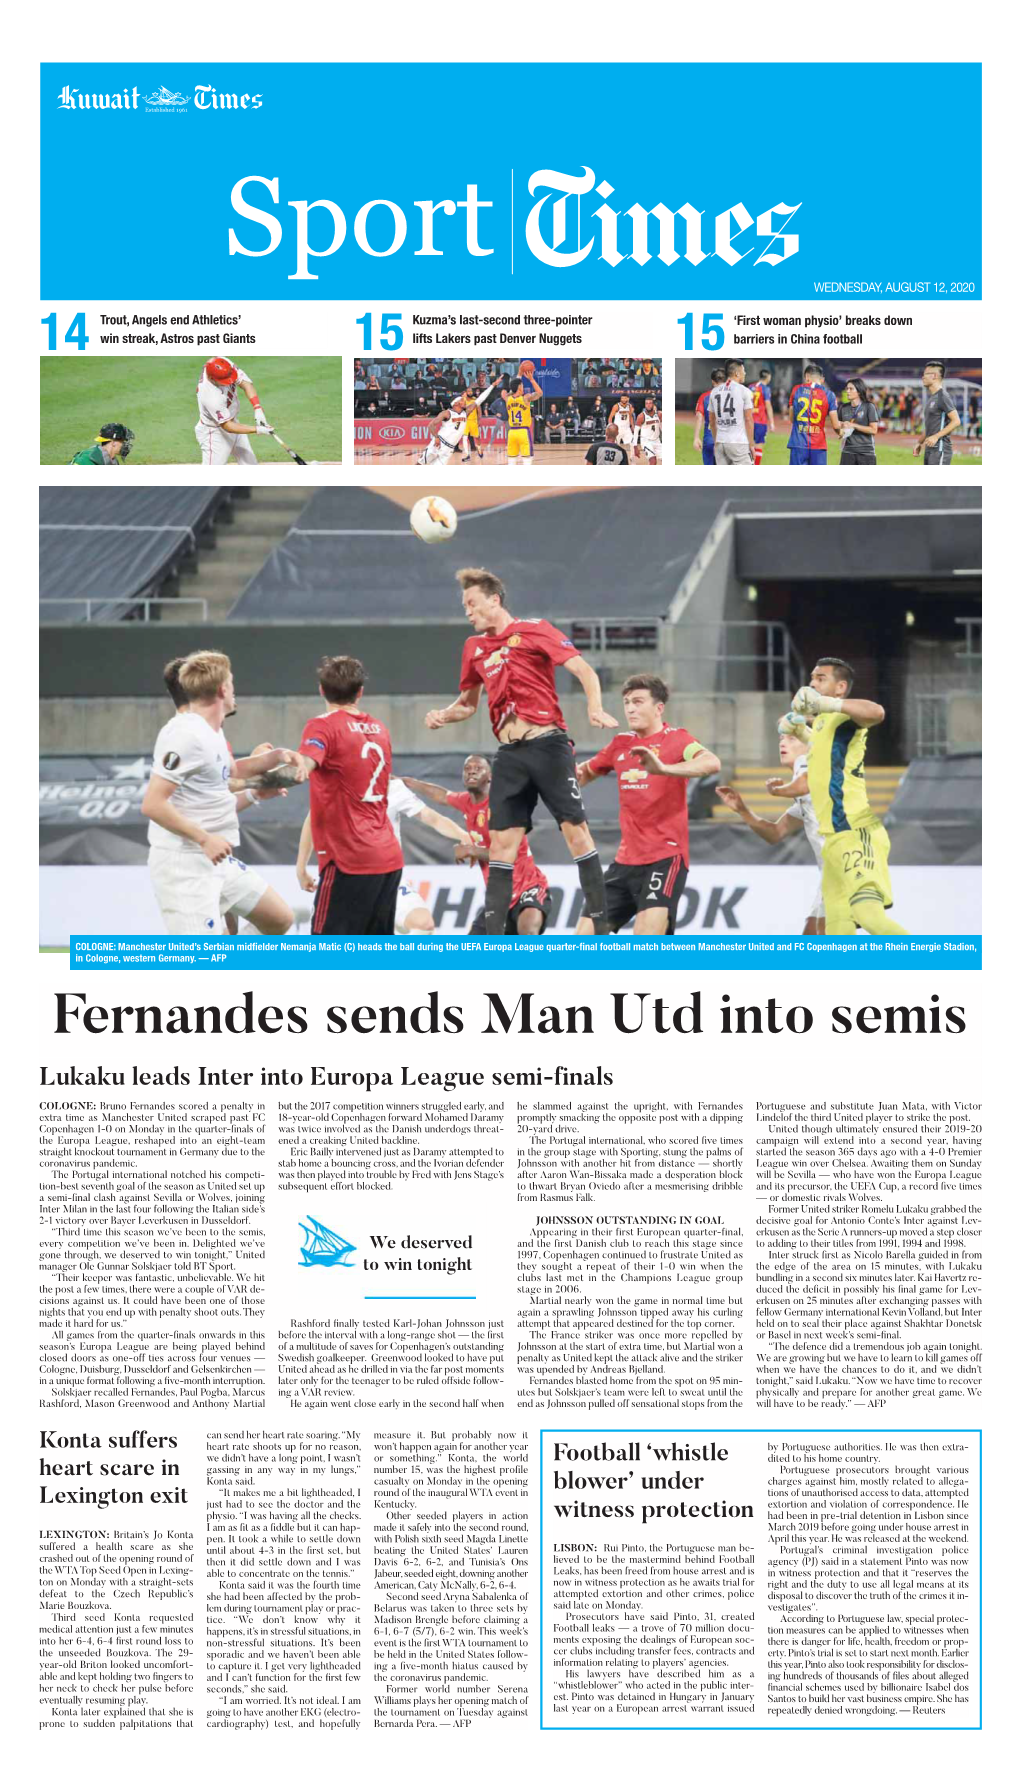 Fernandes Sends Man Utd Into Semis